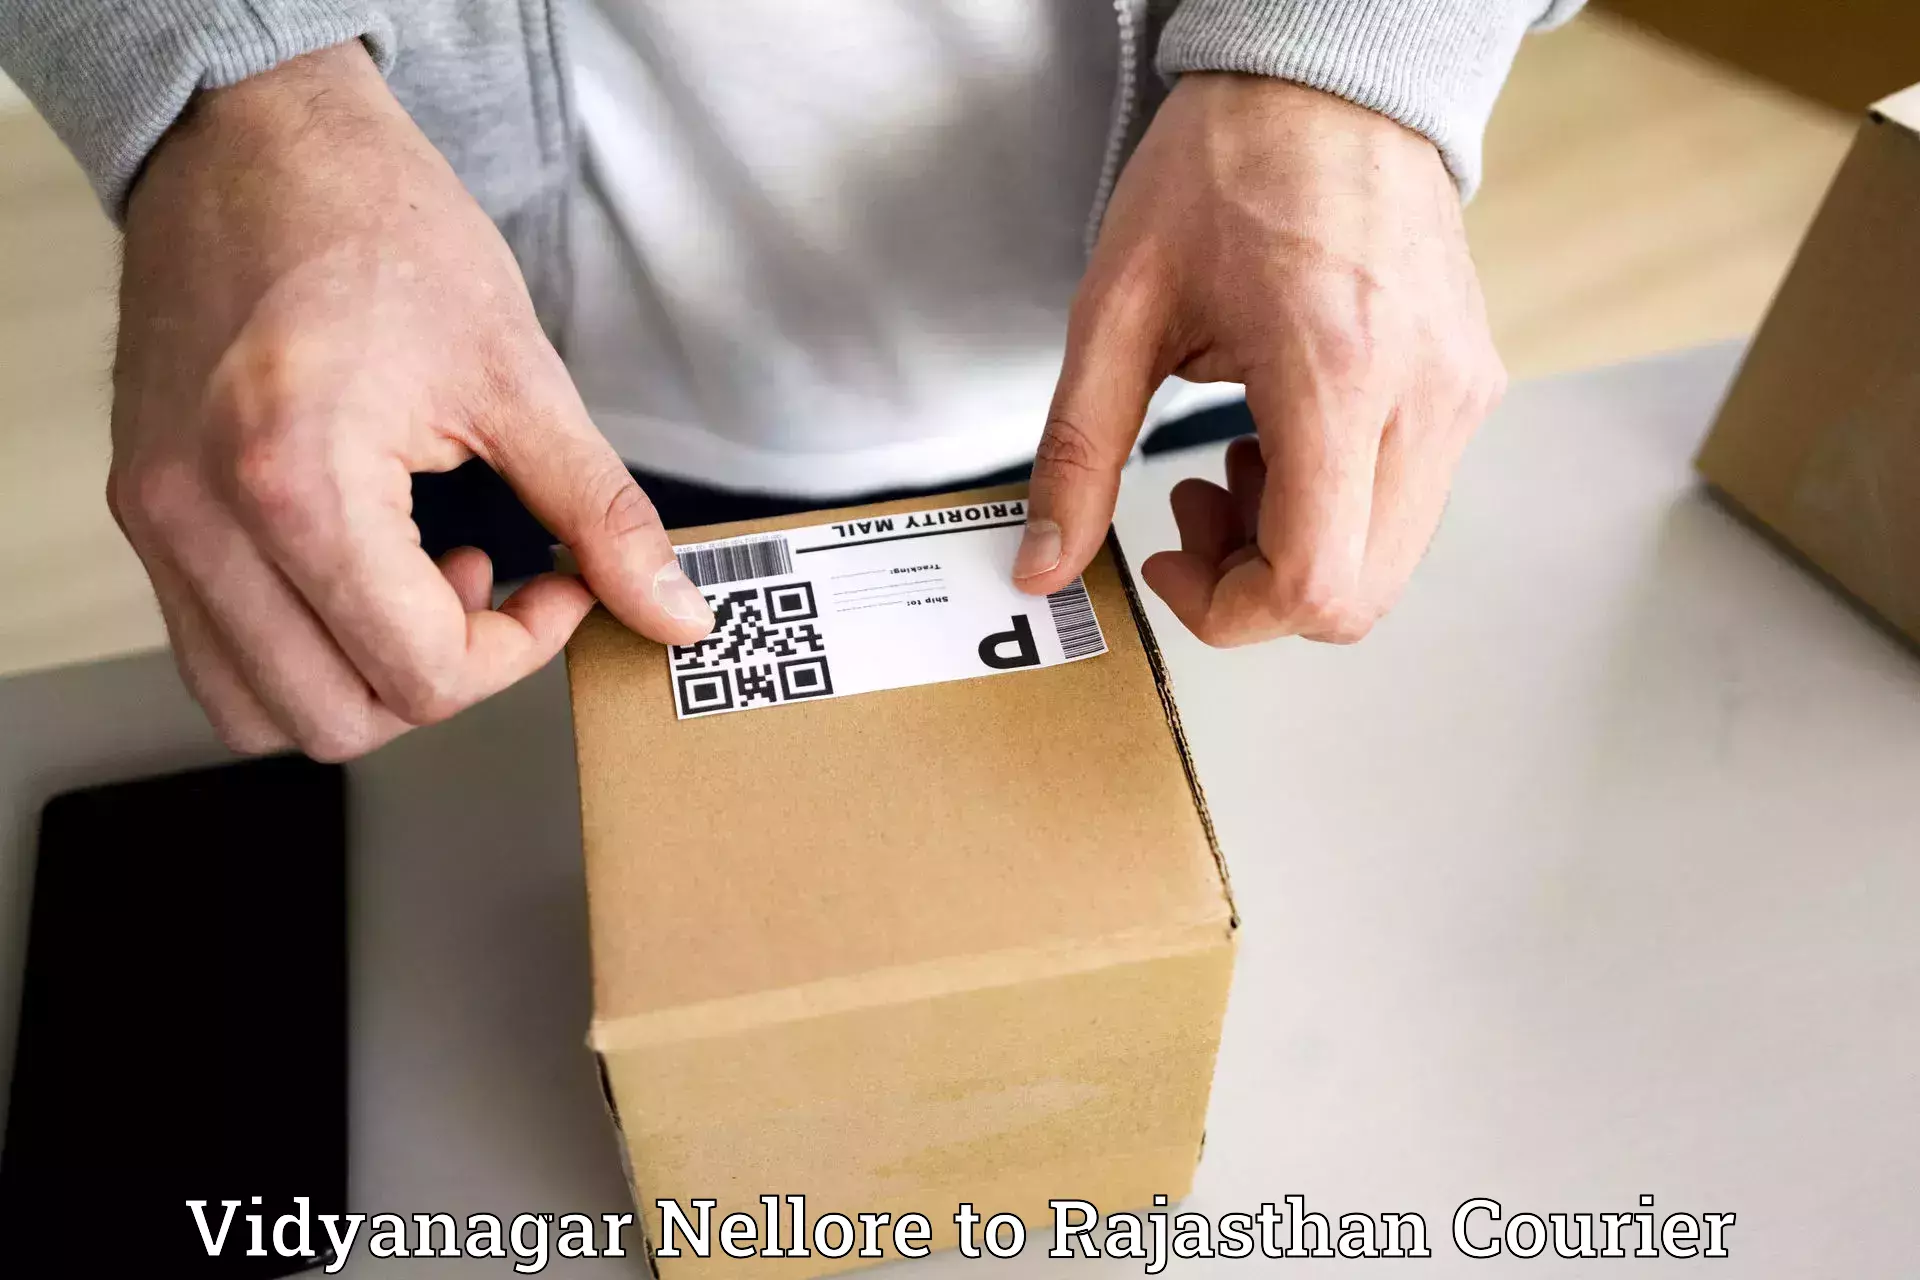 Automated parcel services Vidyanagar Nellore to Sardarshahr